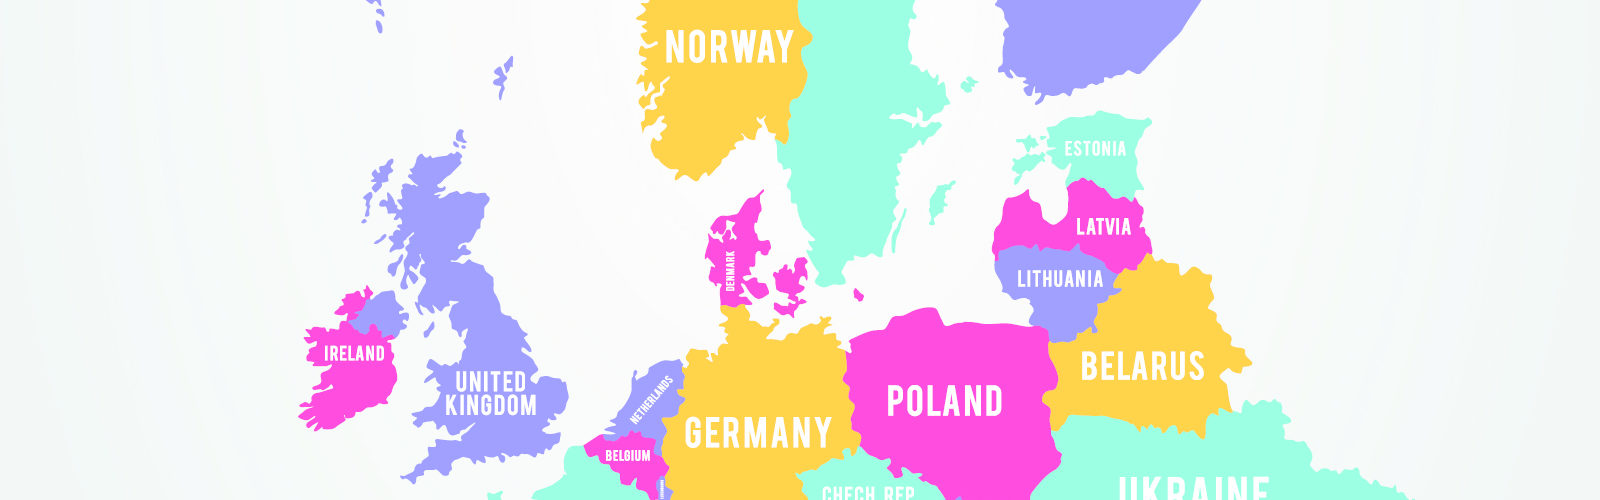 Map of europe (bs322630333).jpg